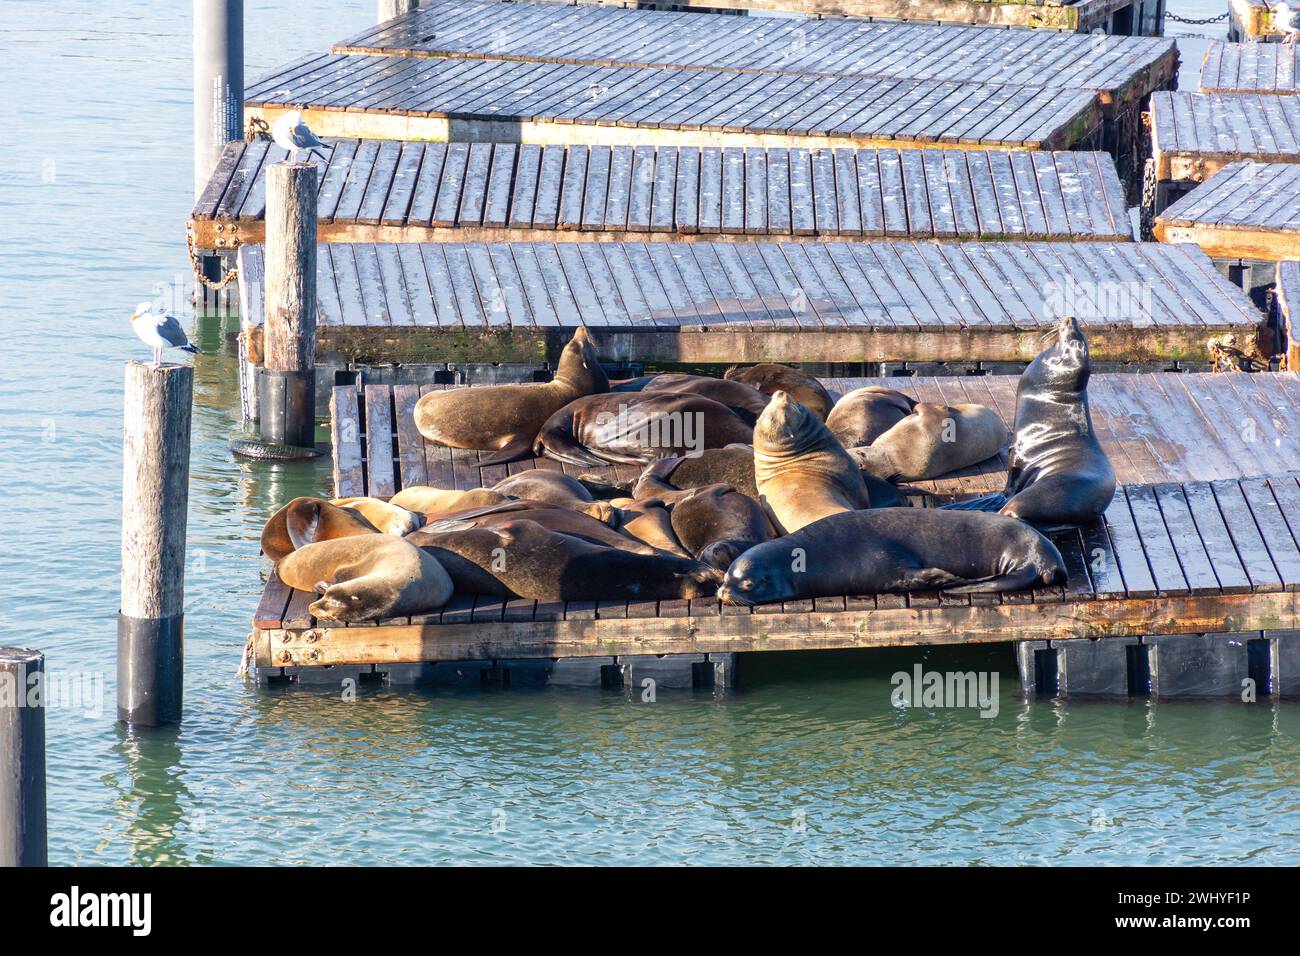 Otaries au quai K Dock at Pier 39, Fisherman's Wharf District, San Francisco, Californie, États-Unis Banque D'Images